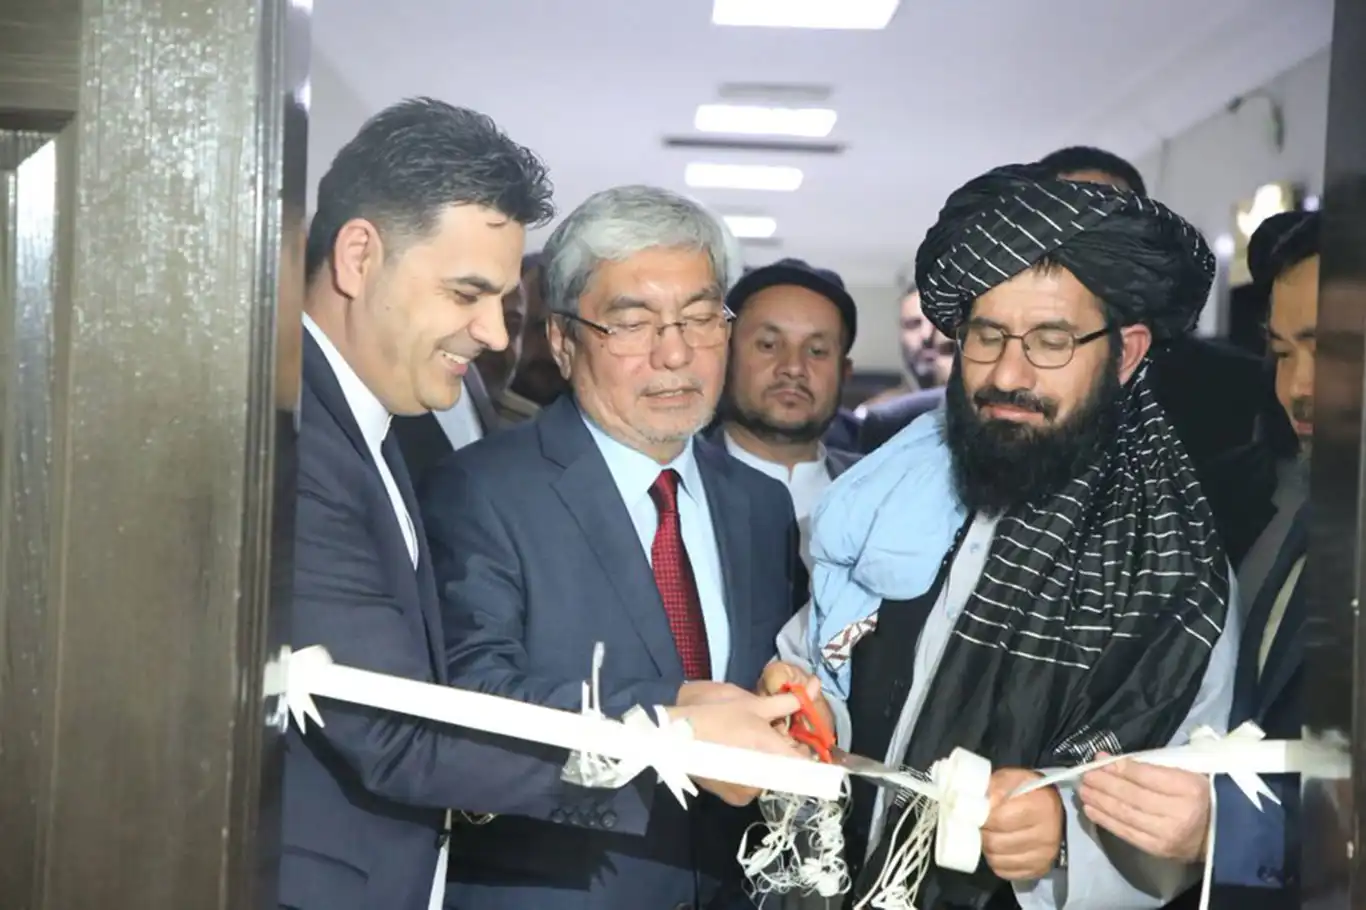 Afganistan ile Kazakistan arasında "Ortak Ticaret Odası" kuruldu